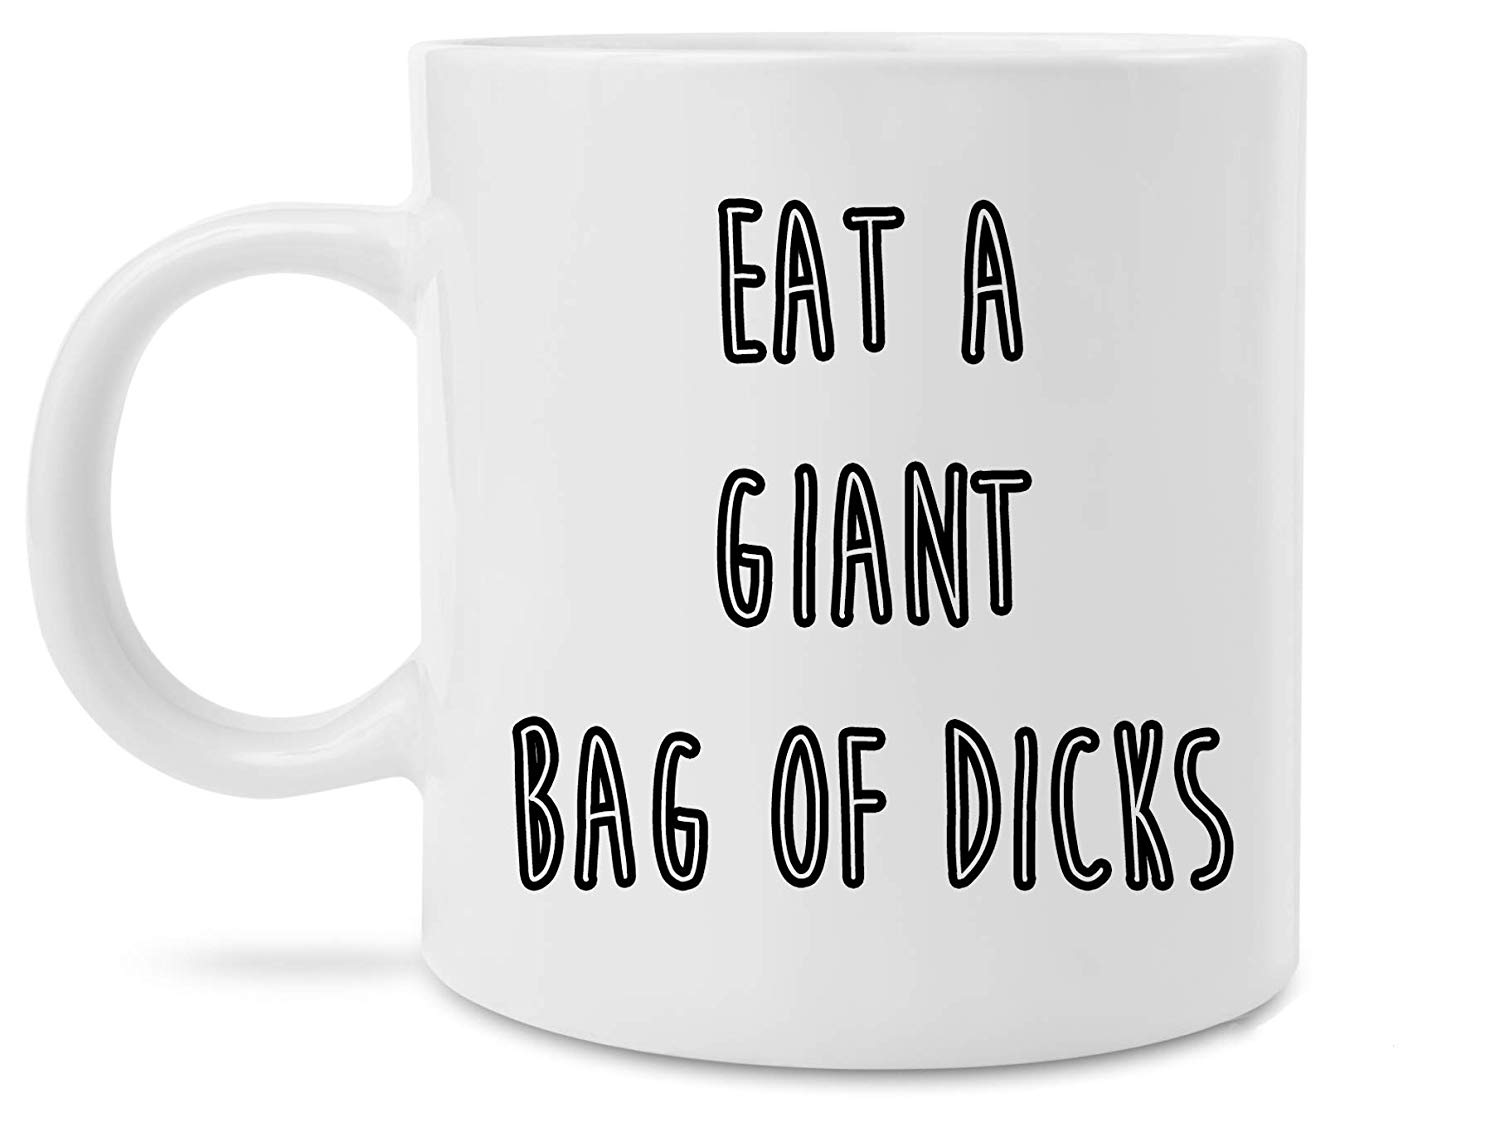 Eat a bag of dicks coffee mug - gag gifts